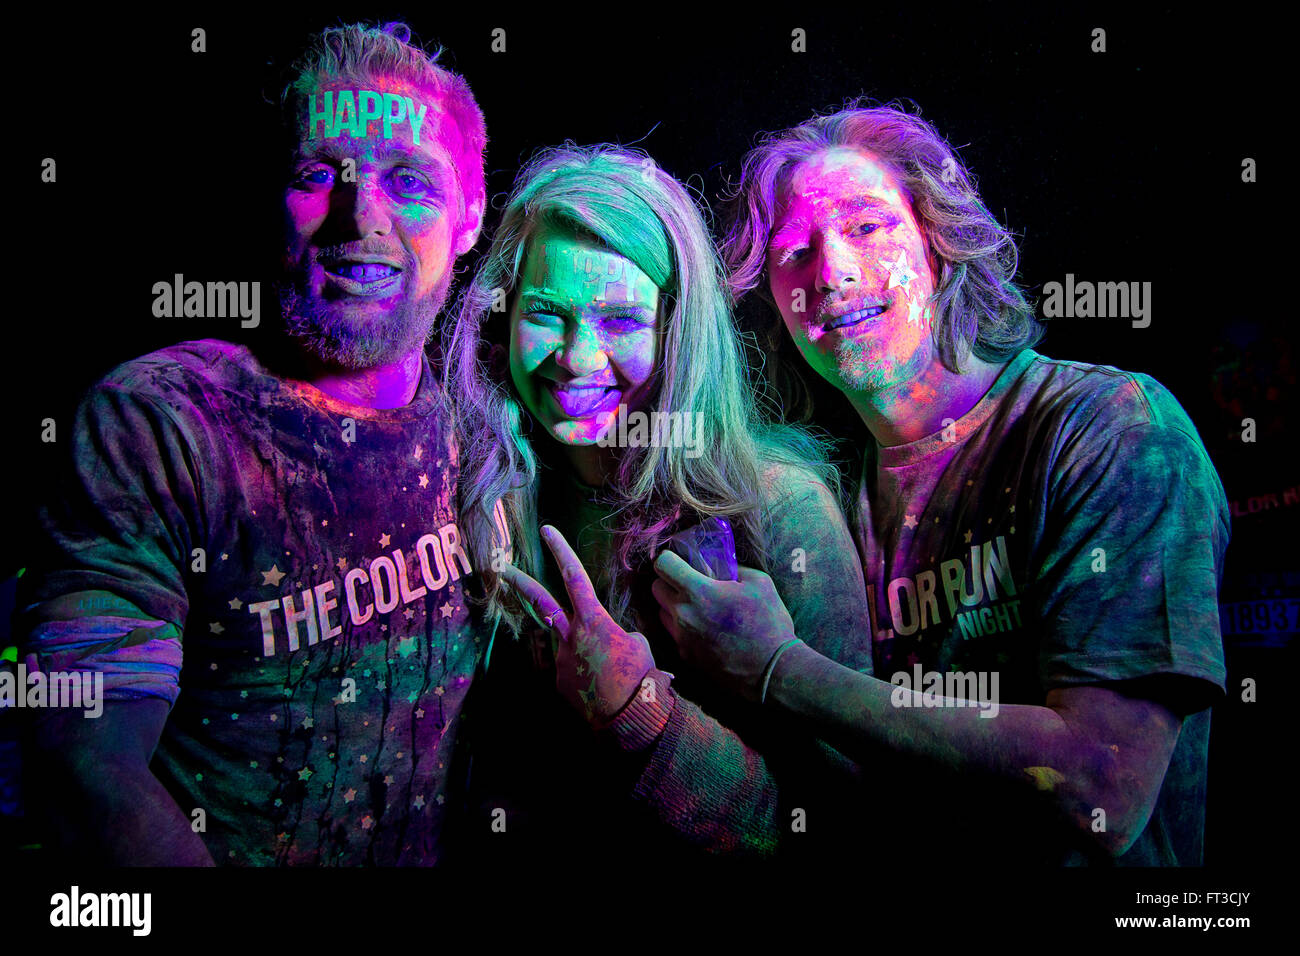 Trois adultes prenant part à la Color Run nuit 5K fun run. Elles sont couvertes de poudre de couleur sous la lumière UV. Banque D'Images